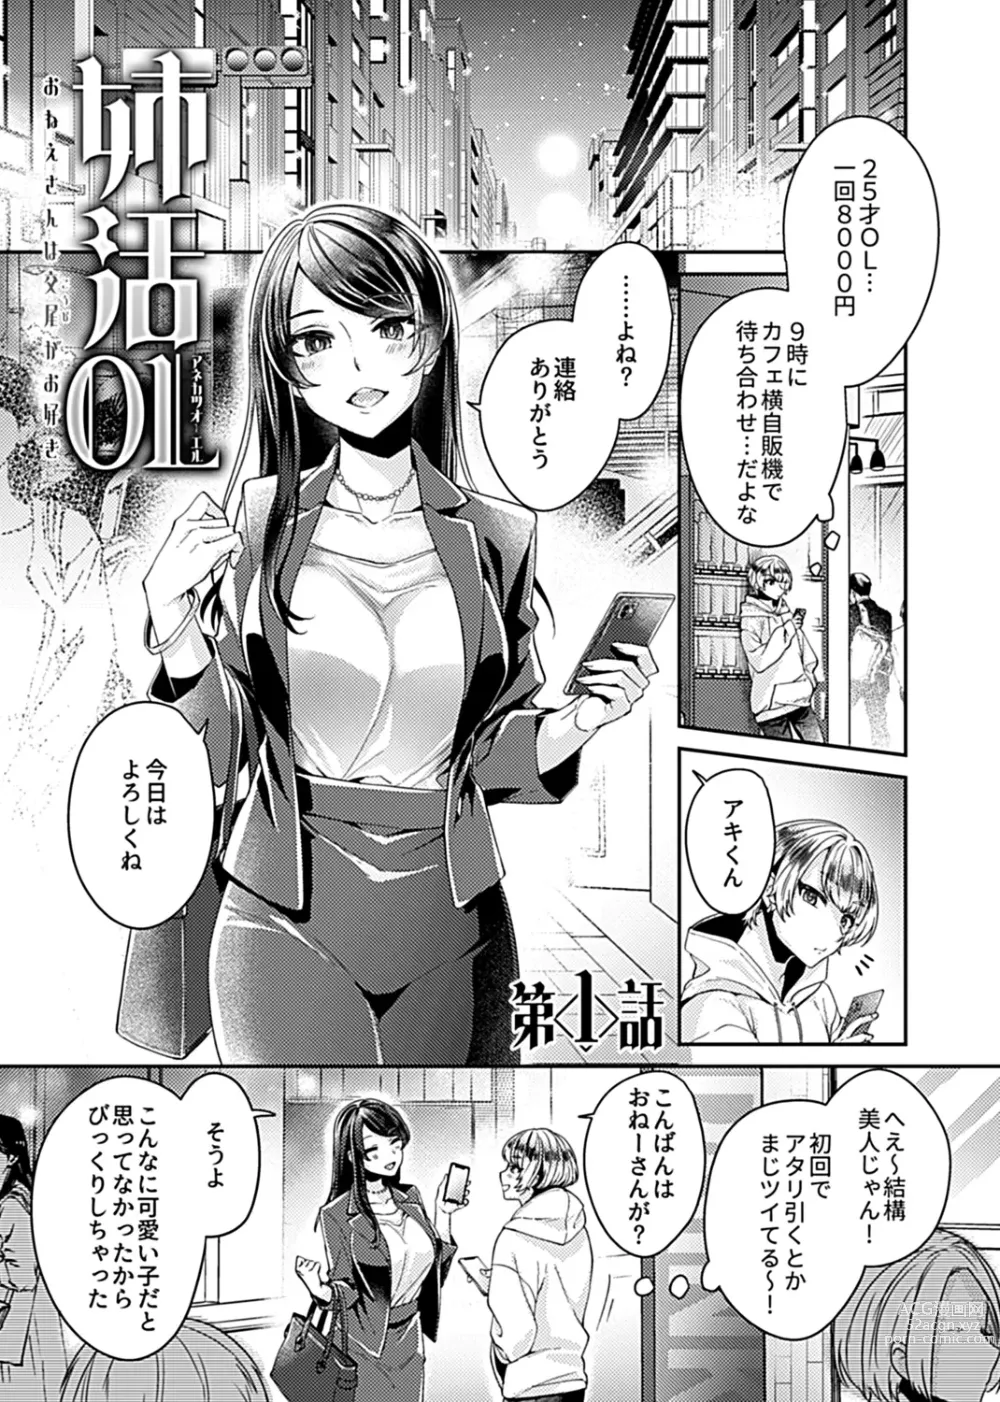 Page 3 of manga Anekatsu  OL